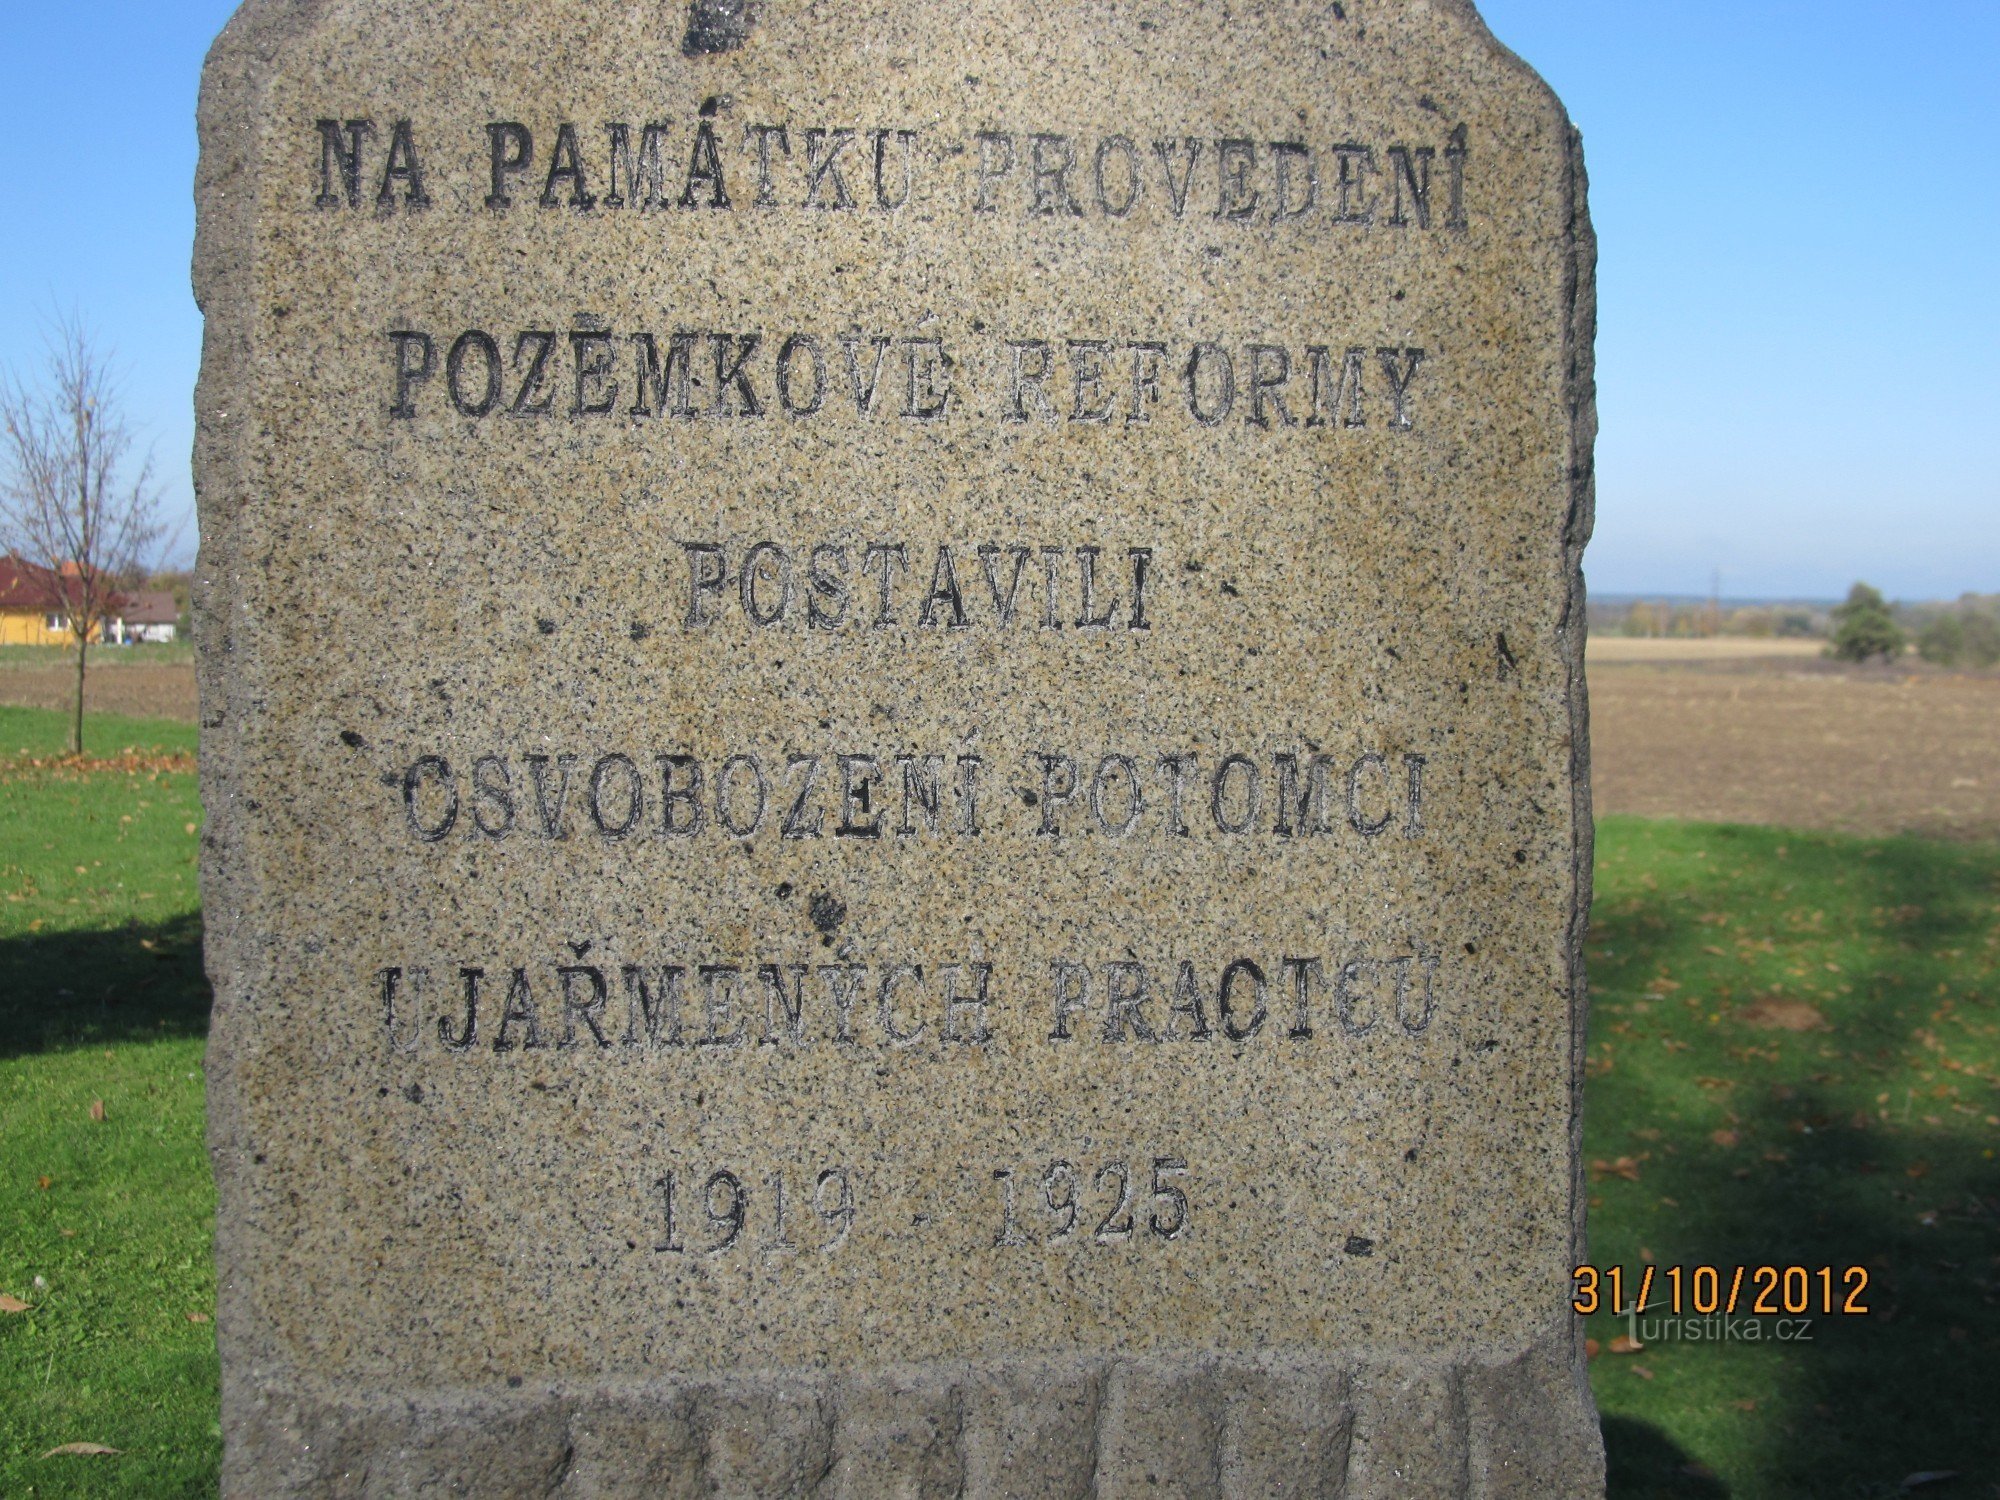 Đài tưởng niệm cuộc cải cách ruộng đất 1919-1938 ở Hlízov trước nghĩa trang - dòng chữ trên đài tưởng niệm